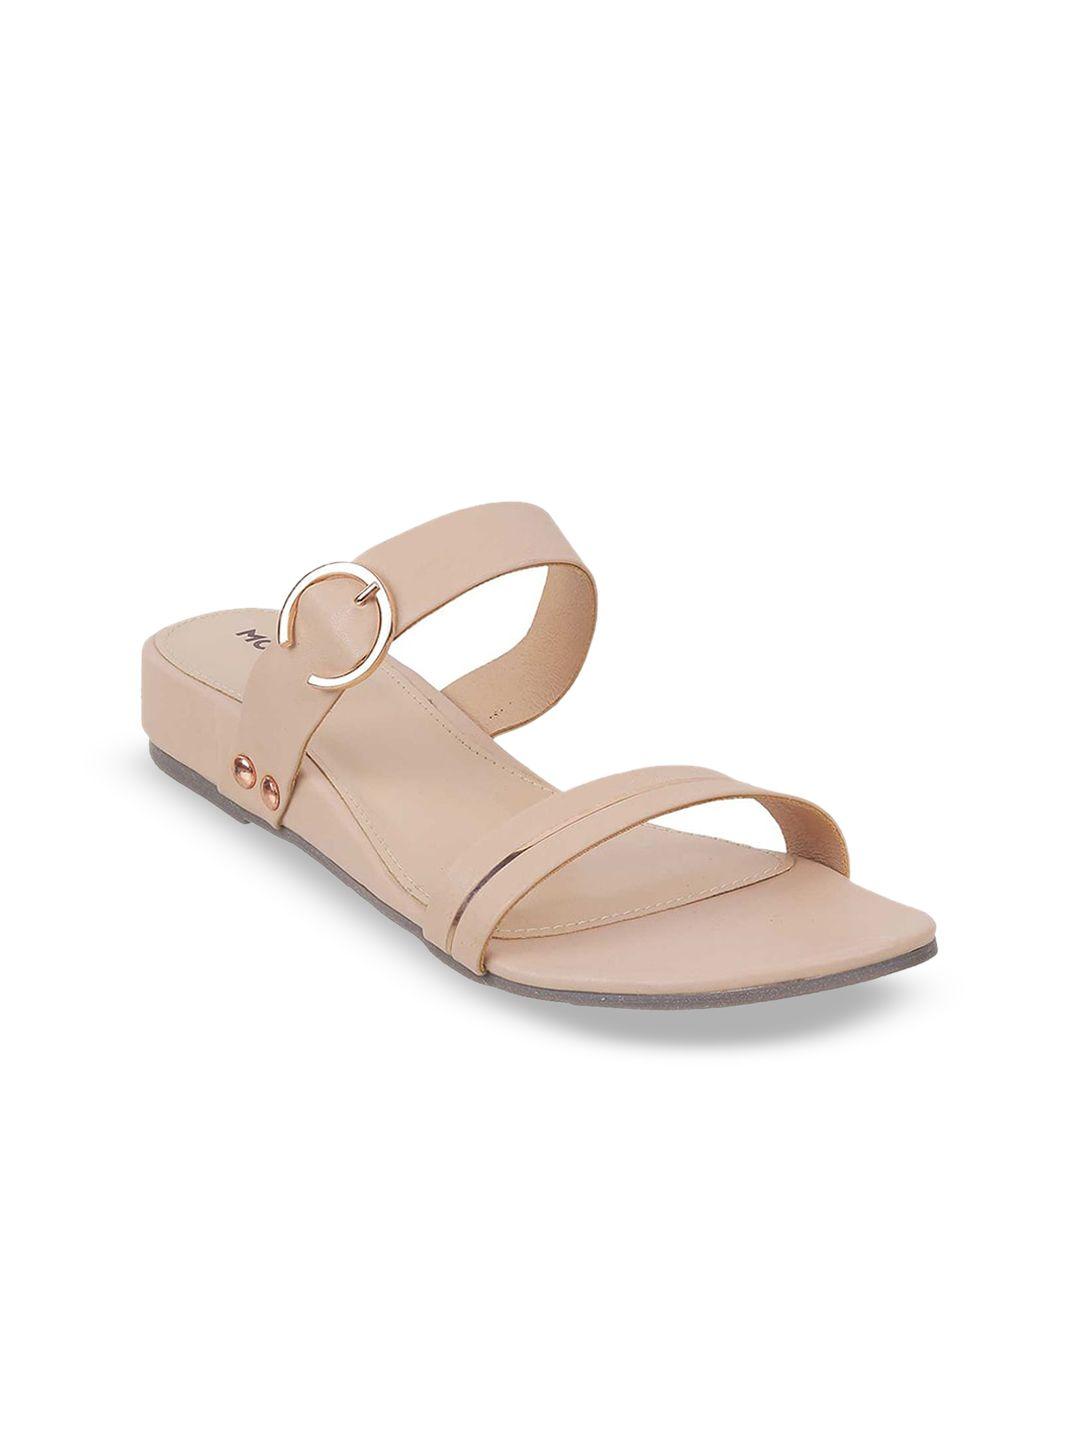 mochi-beige-comfort-sandals-with-buckles